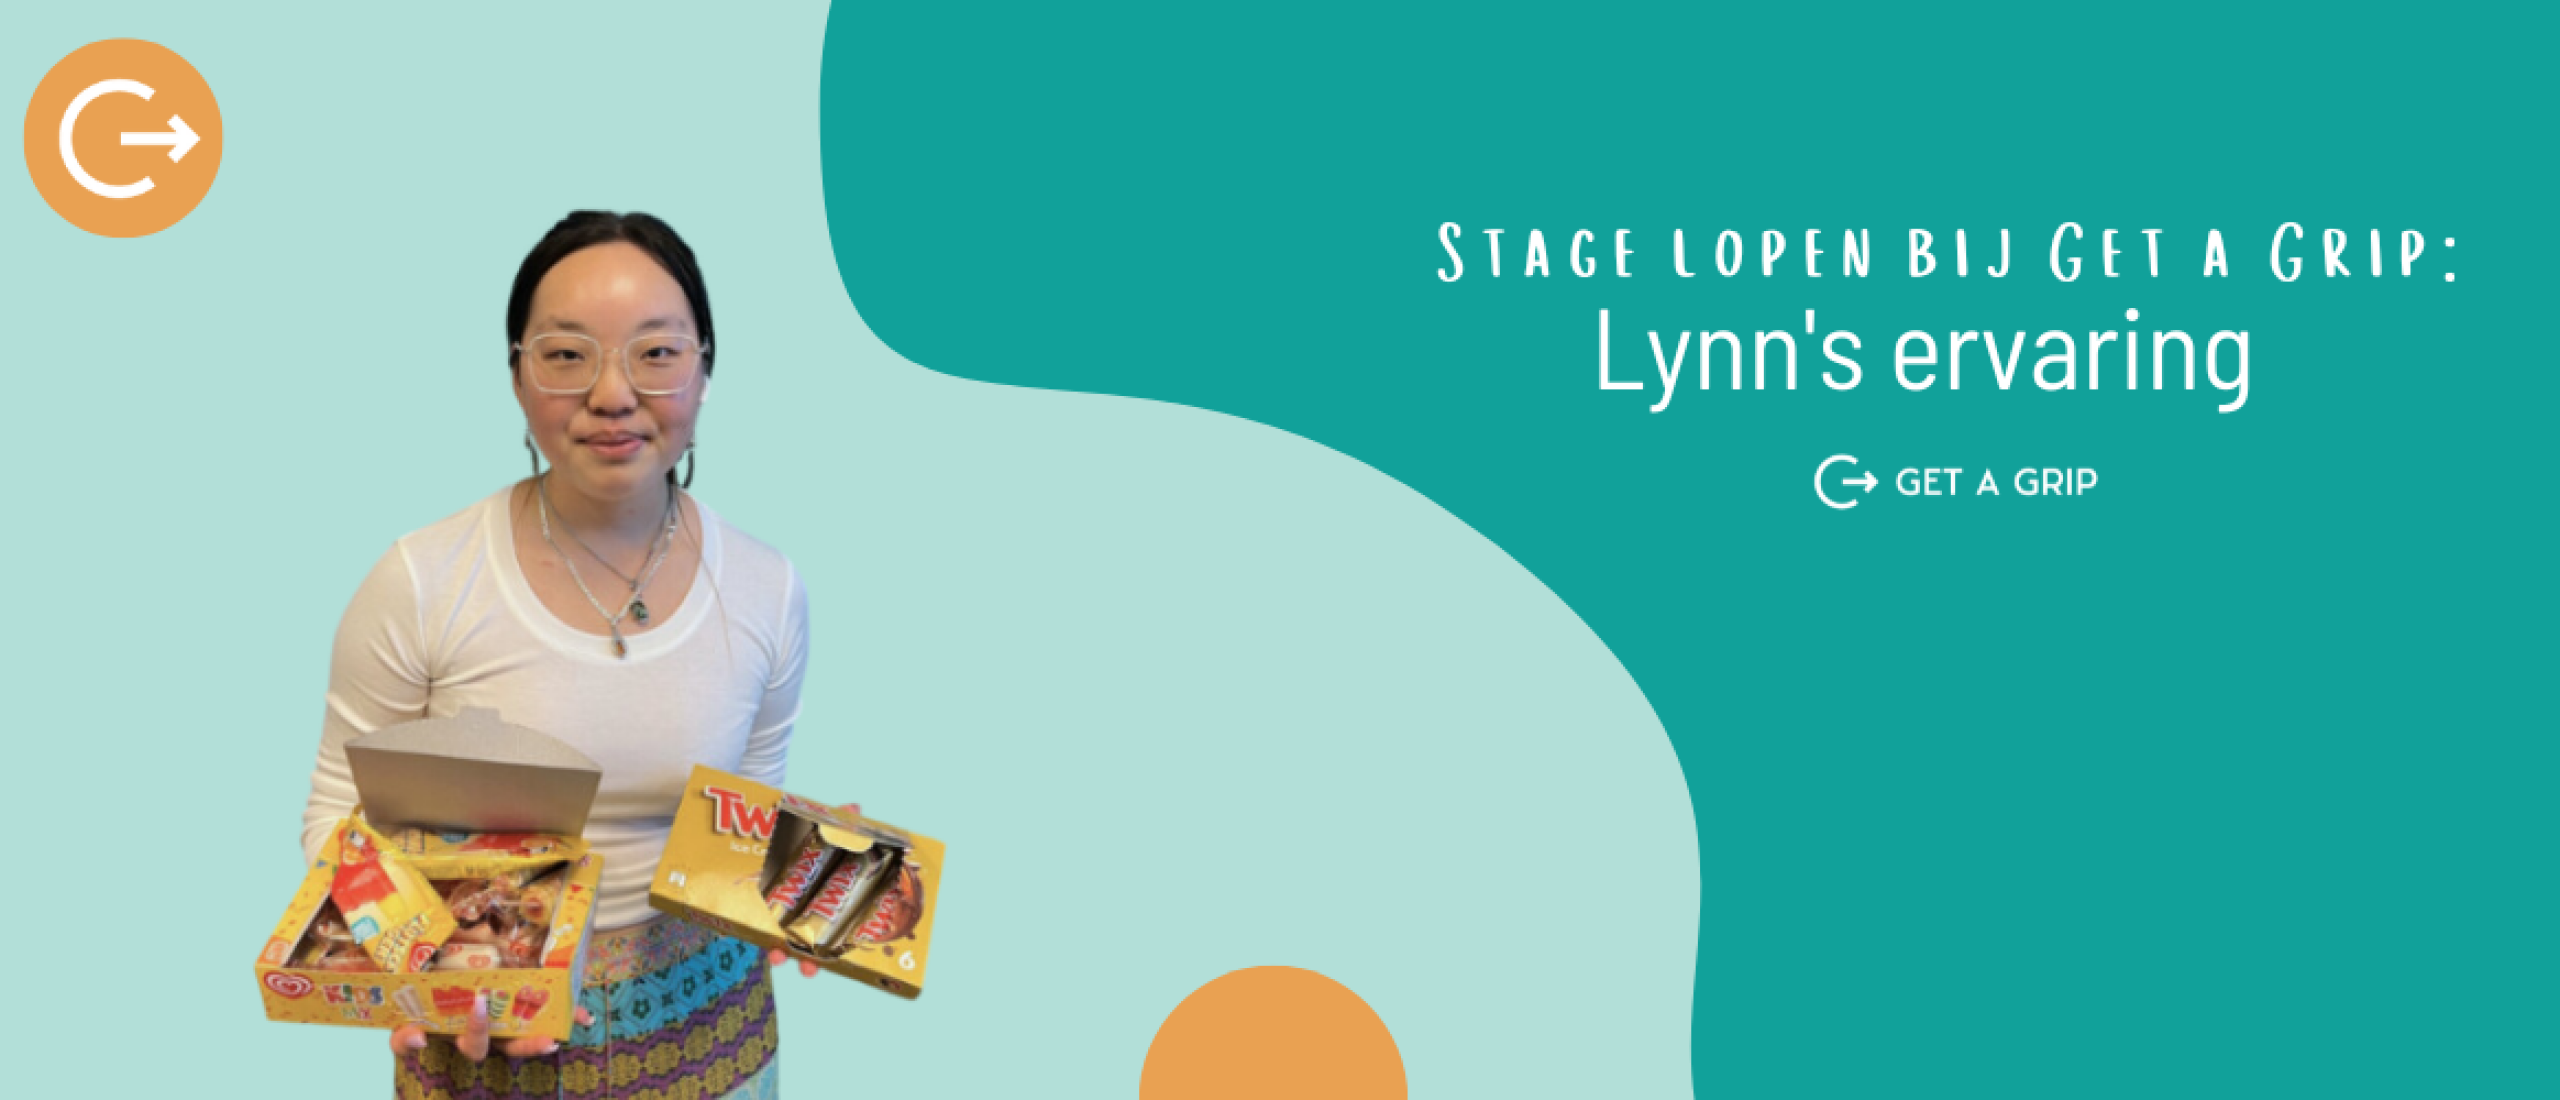 Stage bij Get a Grip: Lynn